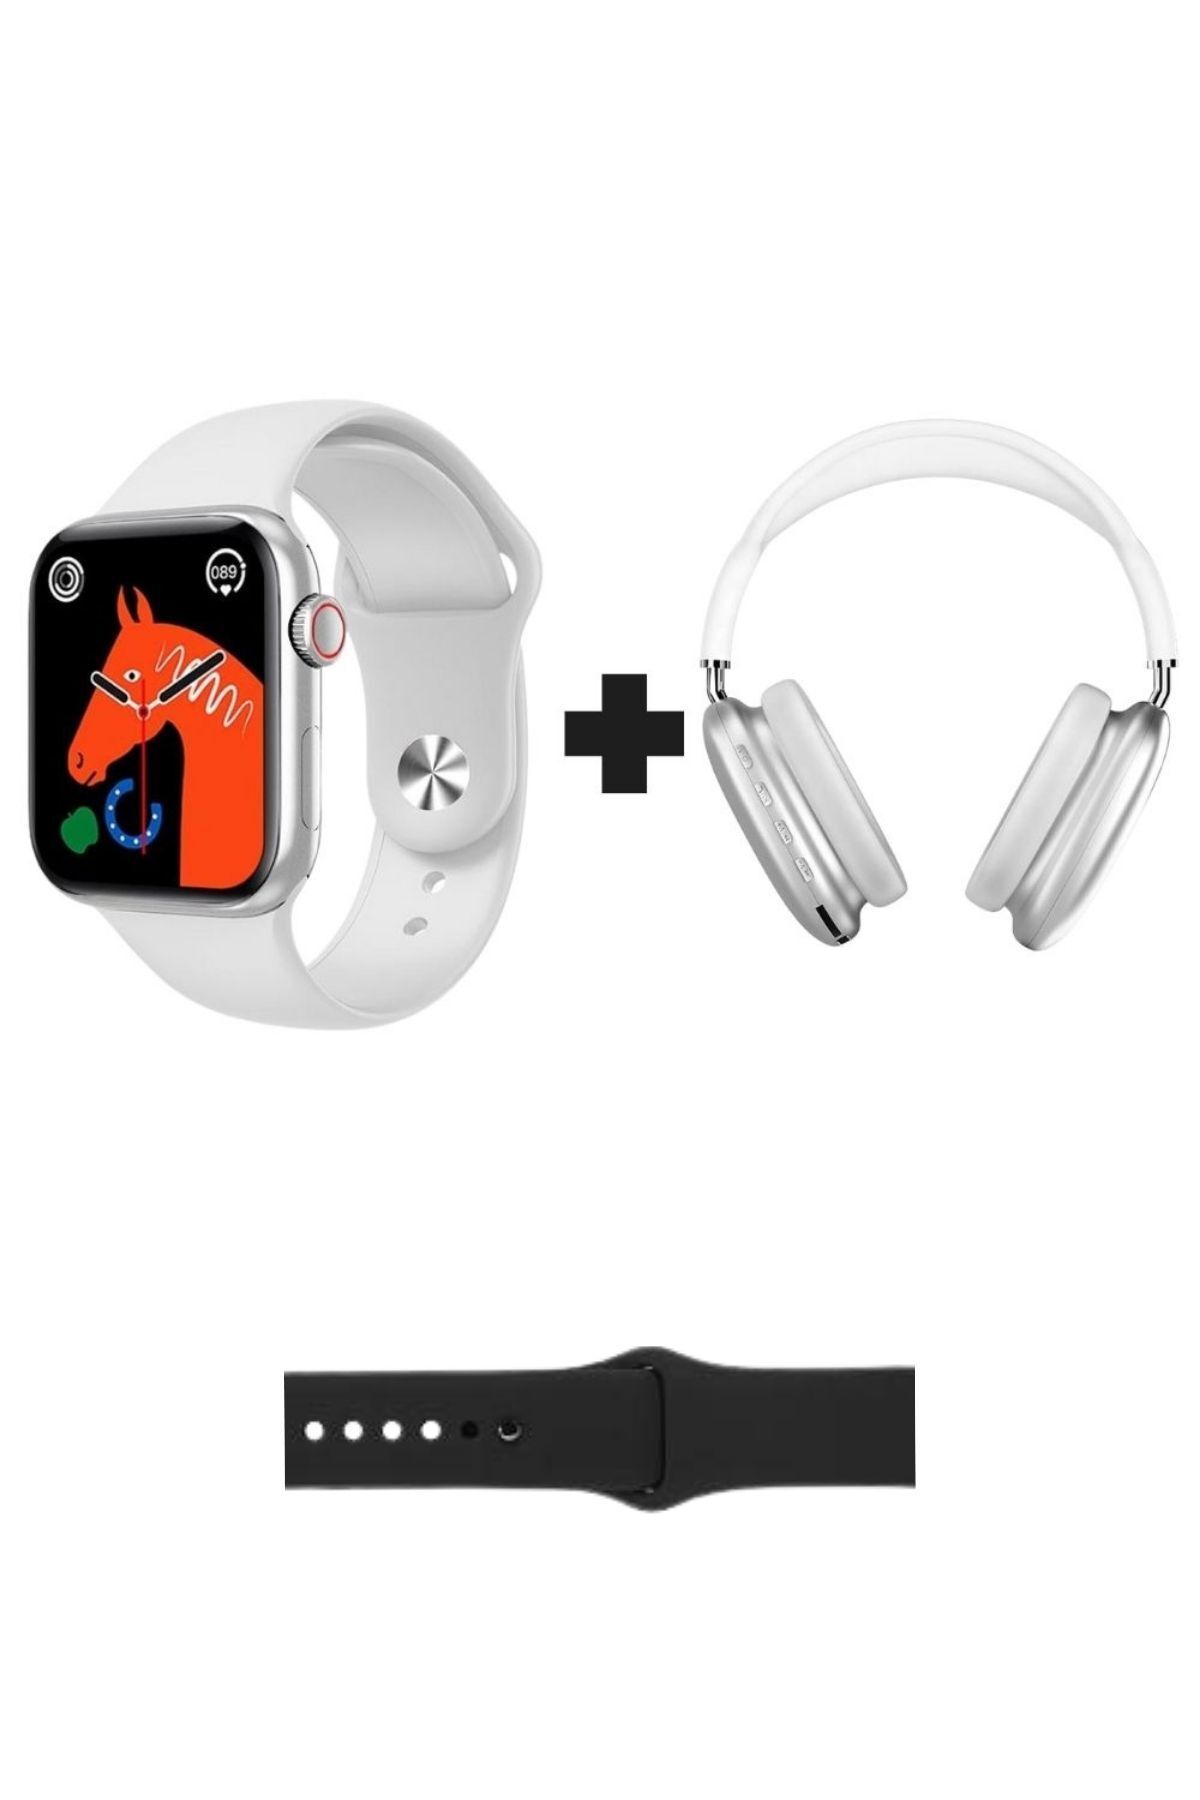 GoMarkt Watch 8 Series Akıllı Saat + P9 Bluetoothlu Kulaküstü Kulaklık İkili Paket Ekstra Kordon Hediyeli